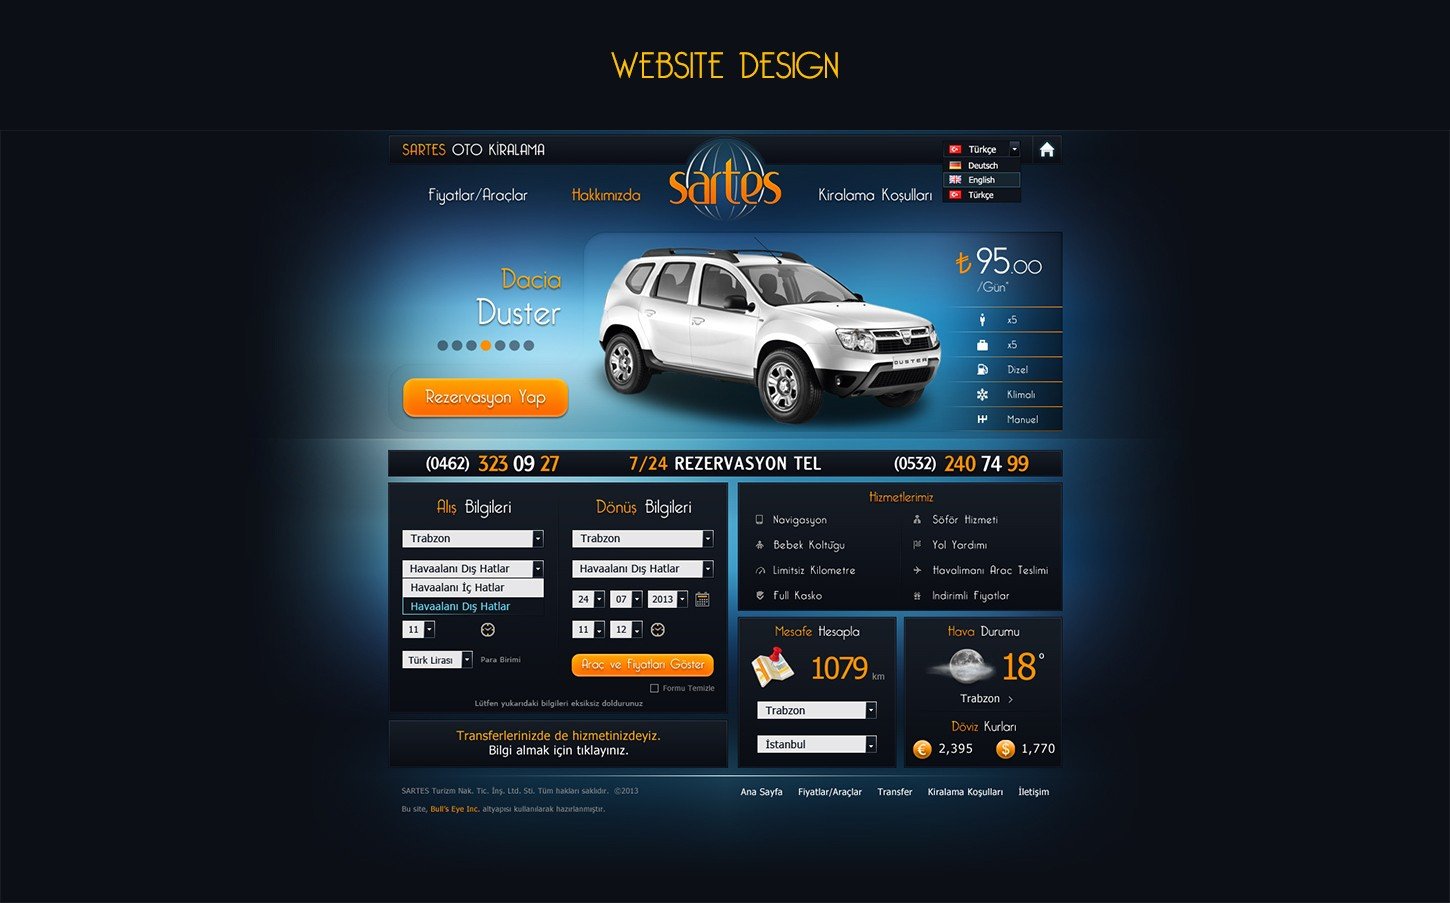 website design sartes